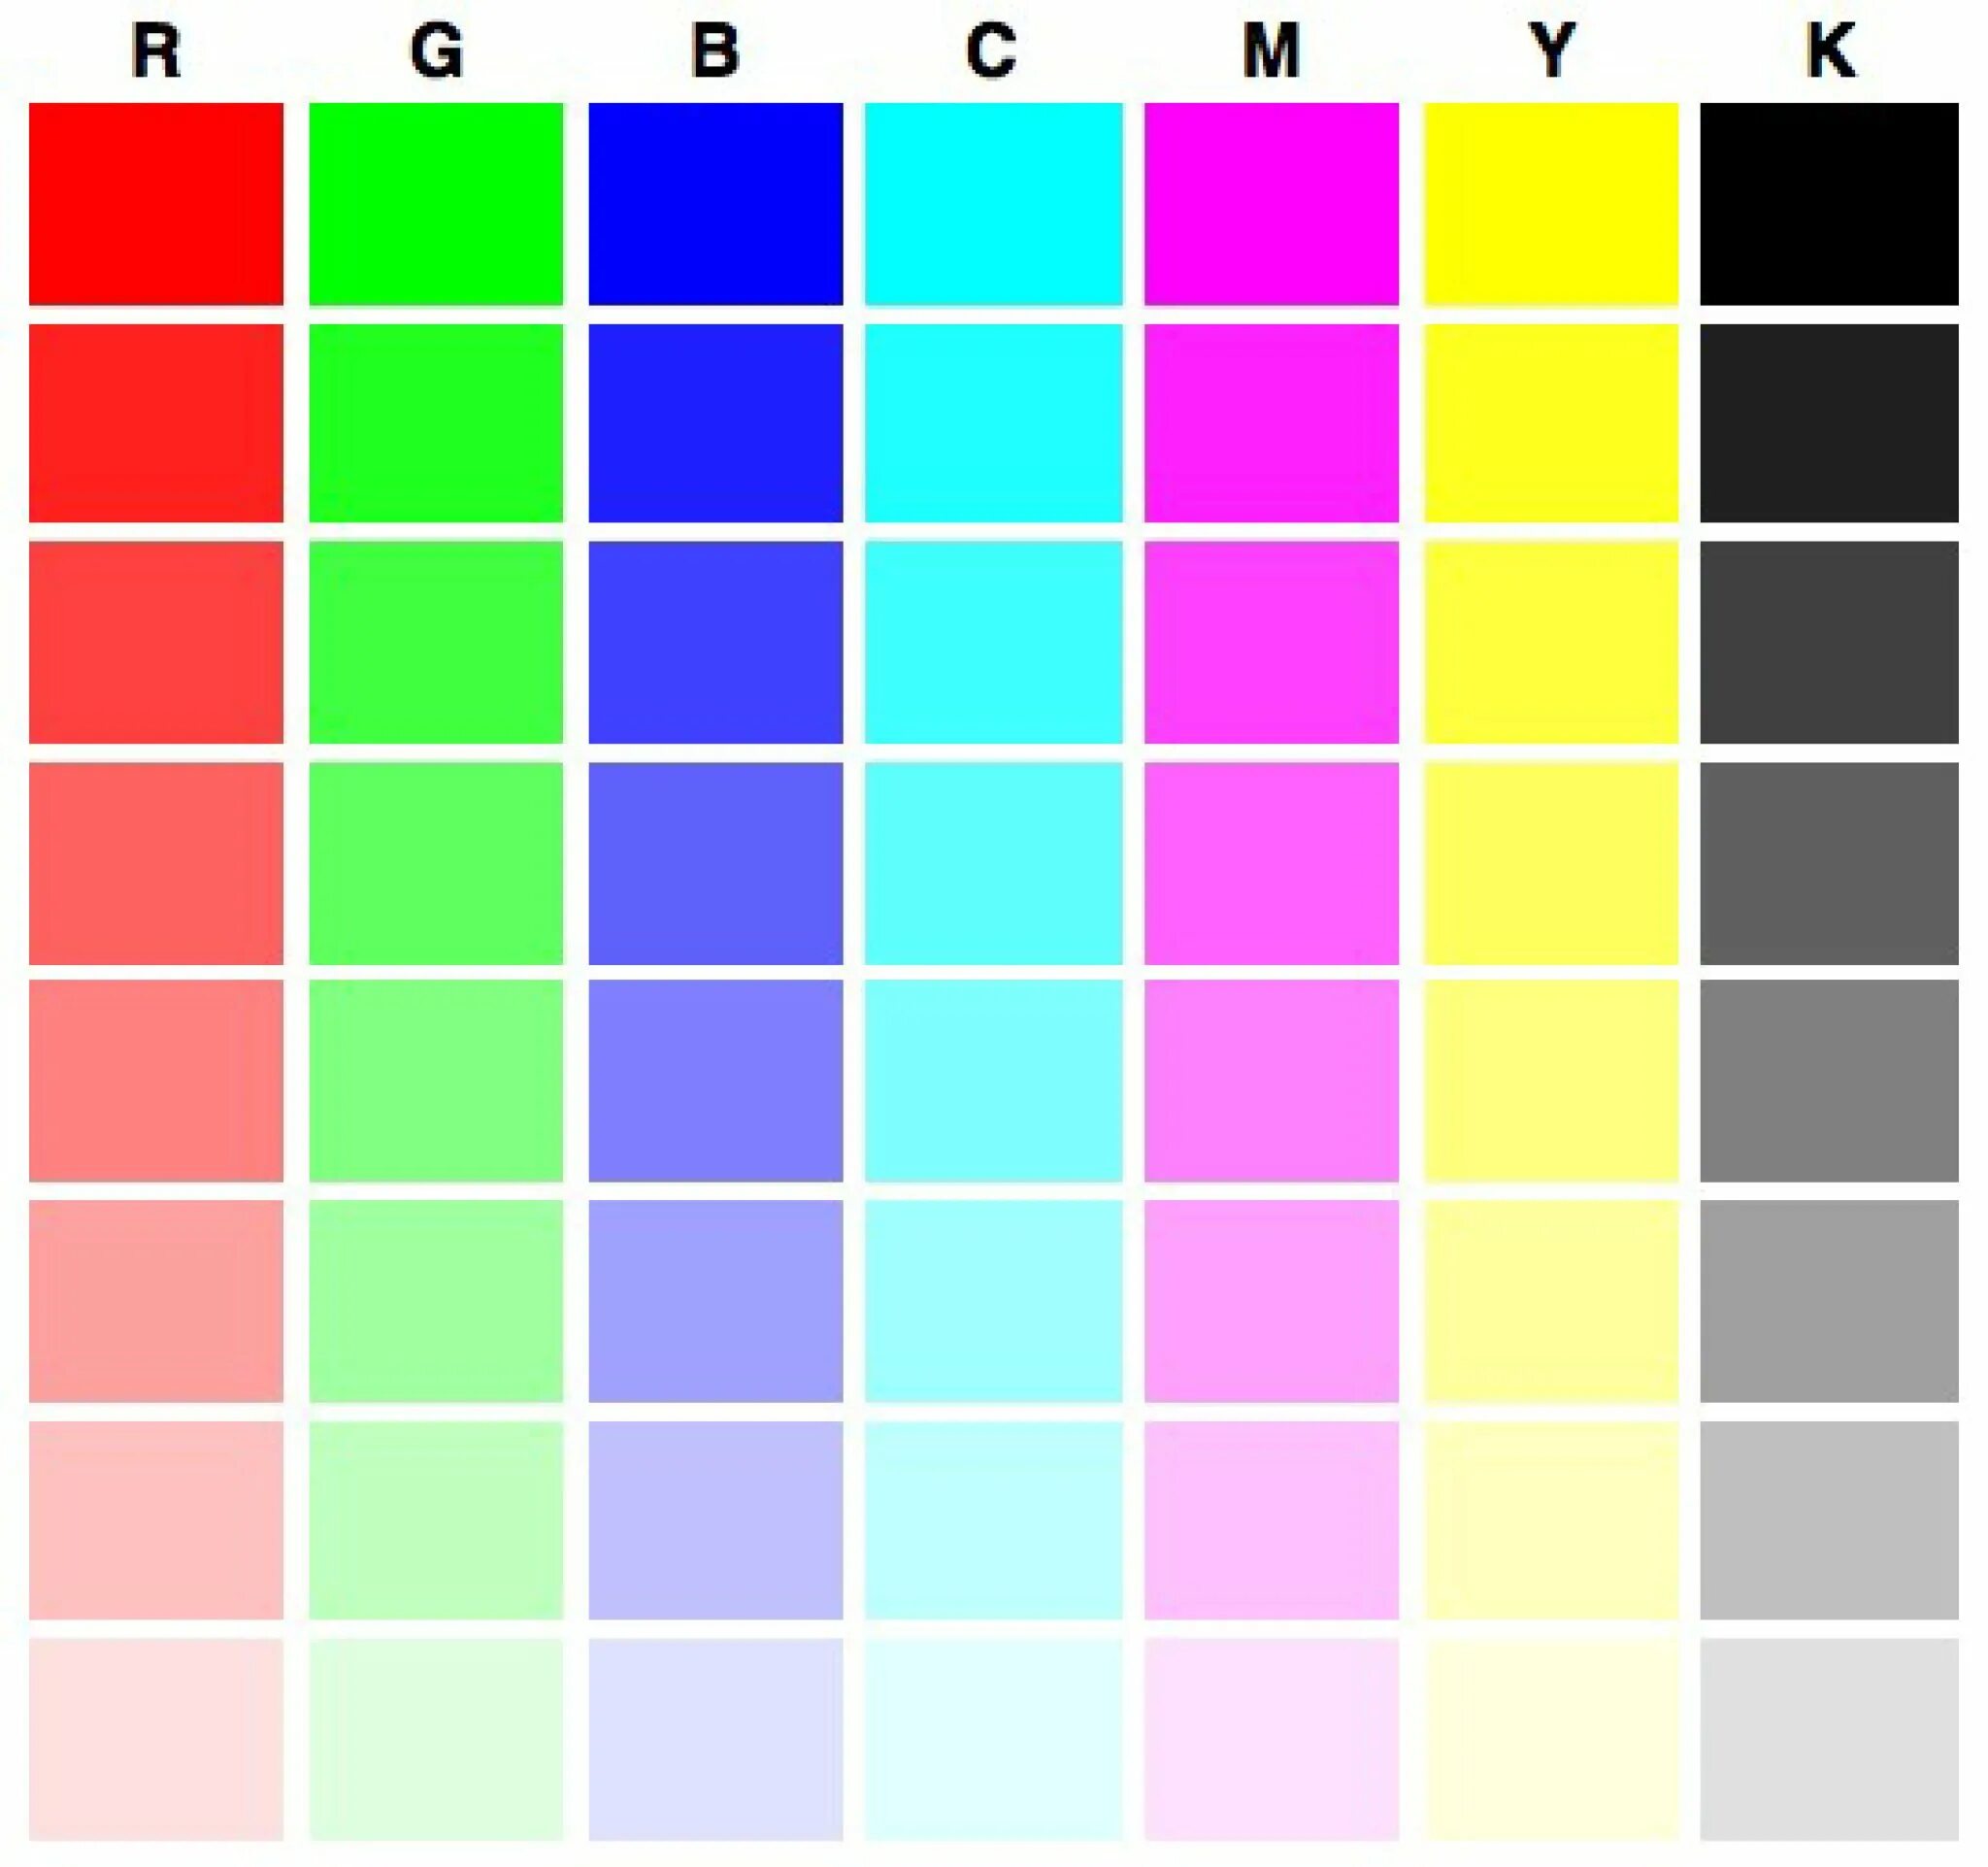 Цвета принтера canon. Тестовая страница для принтера Epson l800. Проверочная таблица цветов для принтера Эпсон. Тест лист для струйного принтера Epson 4 цвета. Калибровка цвета принтера Epson.